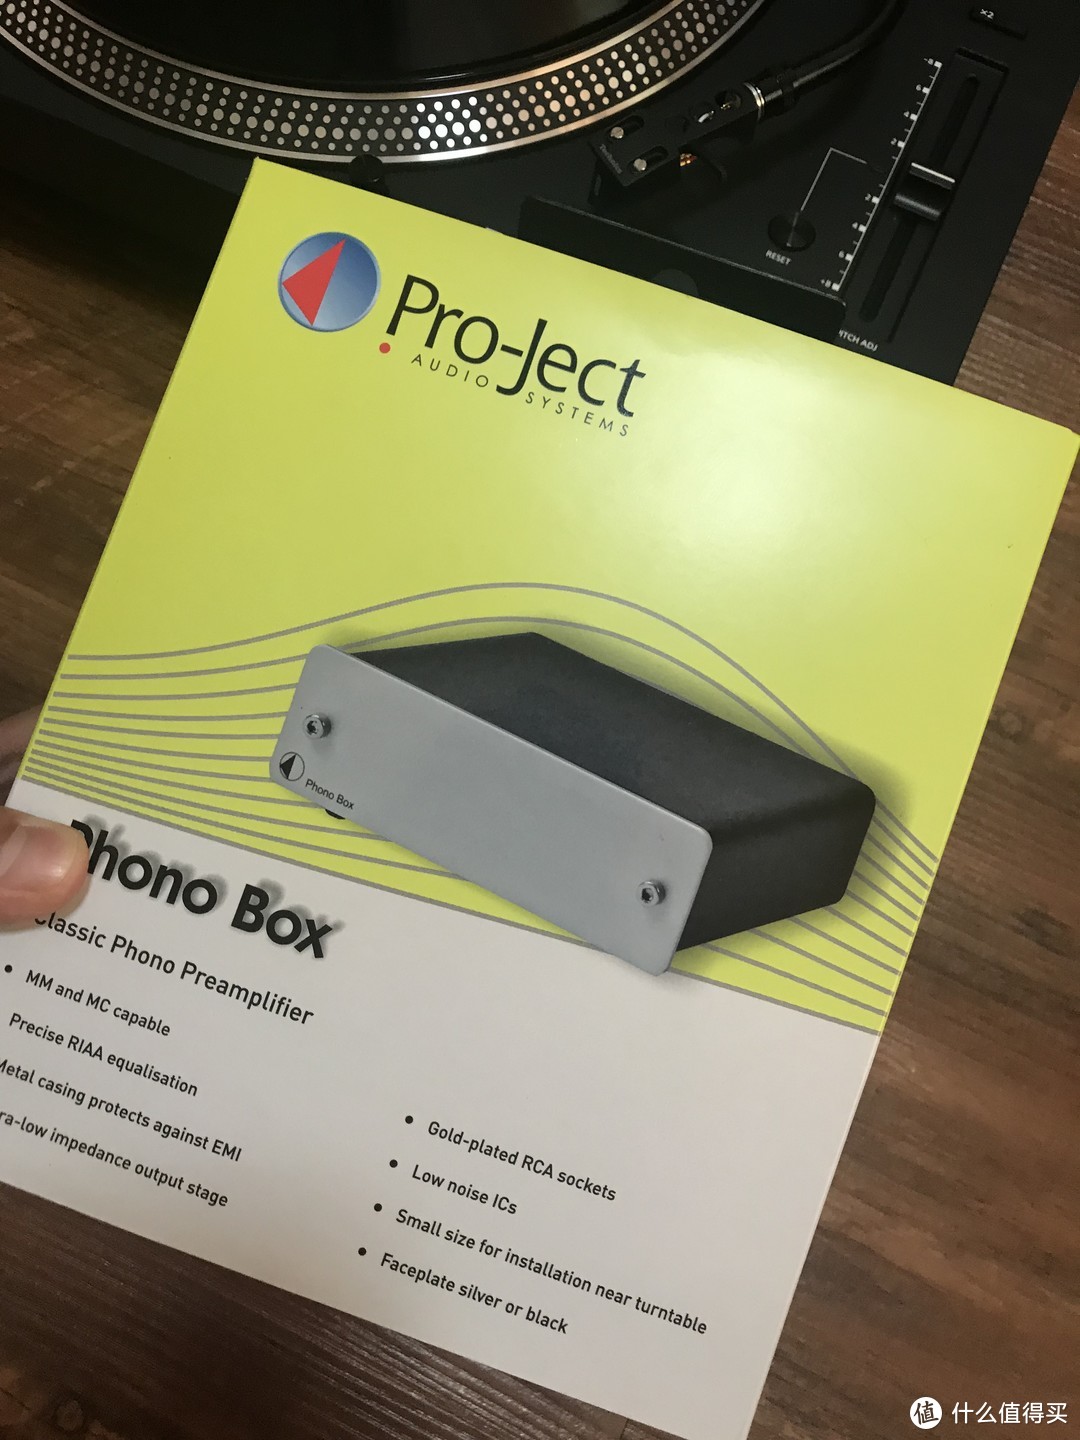 Pro-ject Phono Box